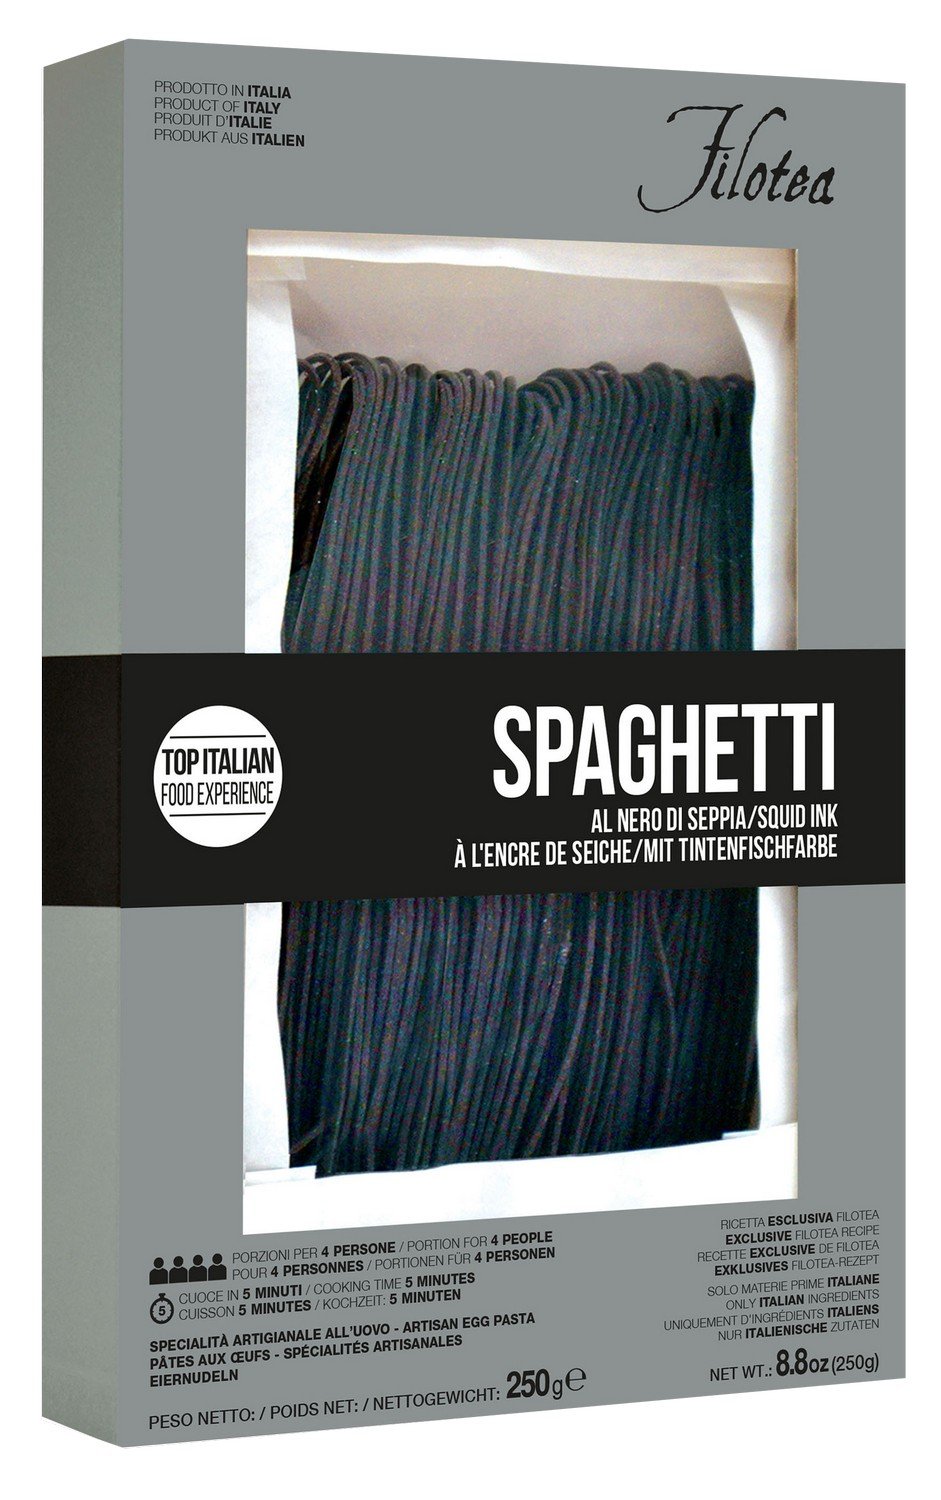 Spaghetti alla Chitarra mit Tintenfischfarbe, 250g